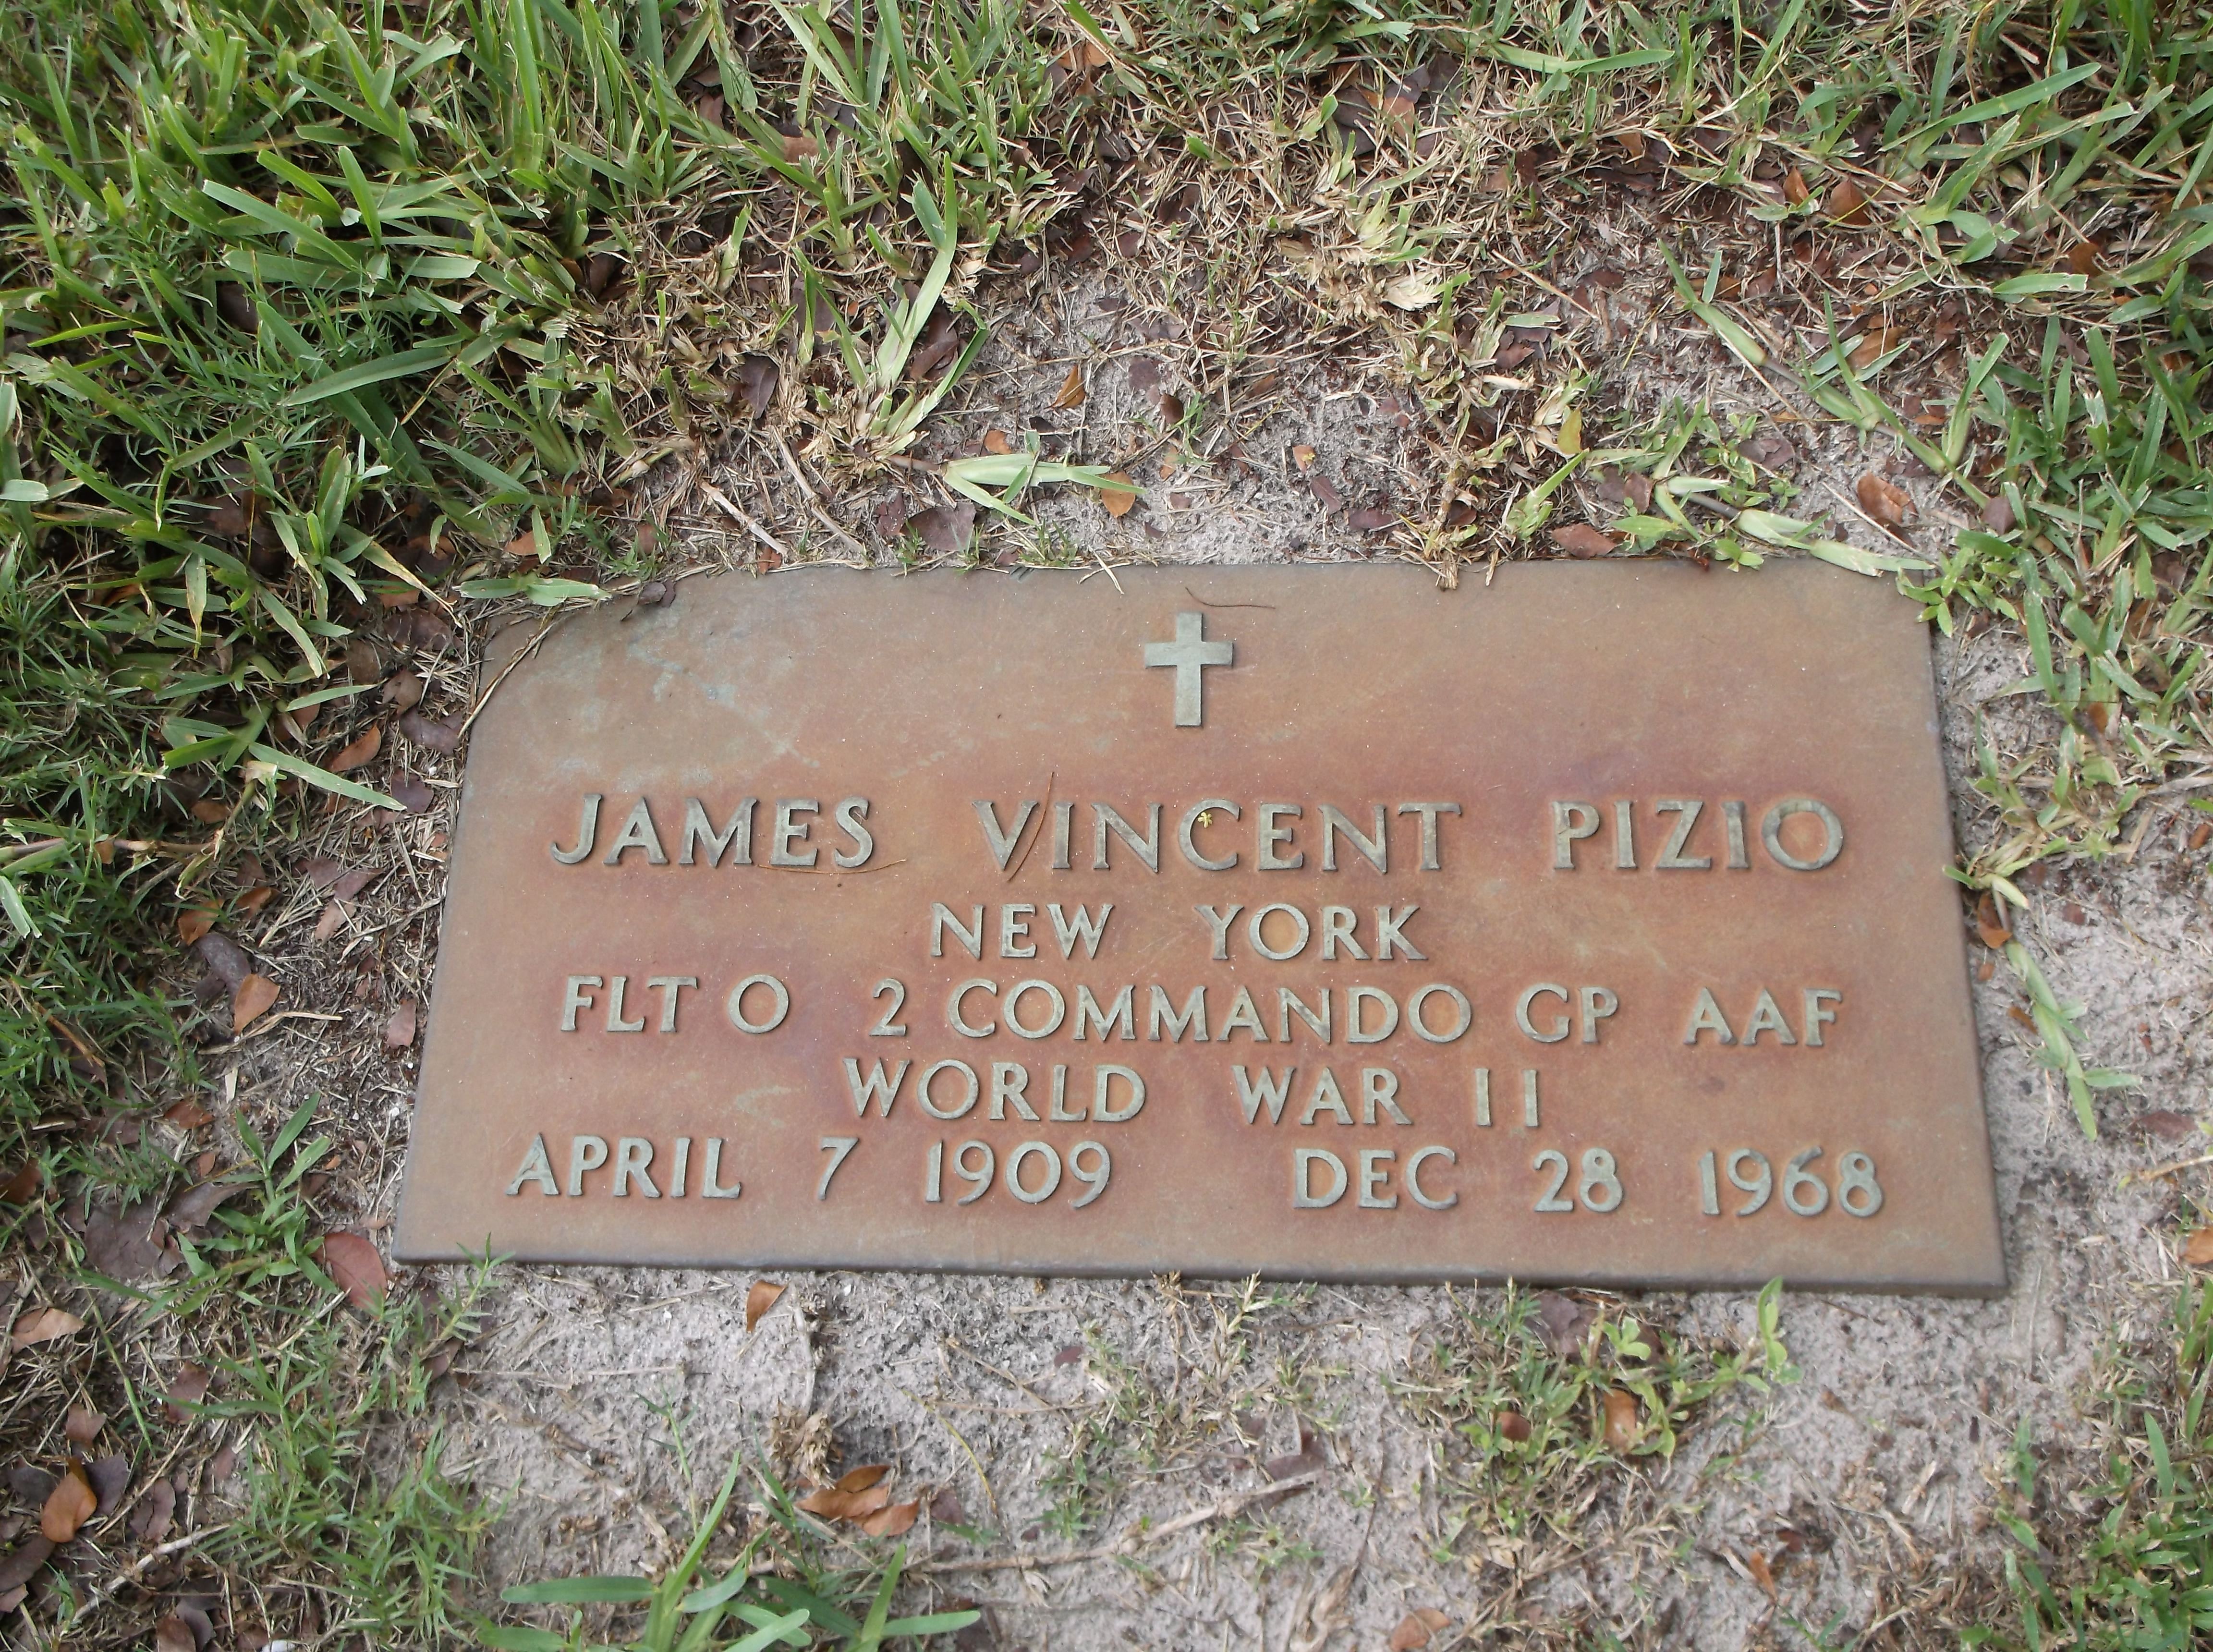 James Vincent Pizio